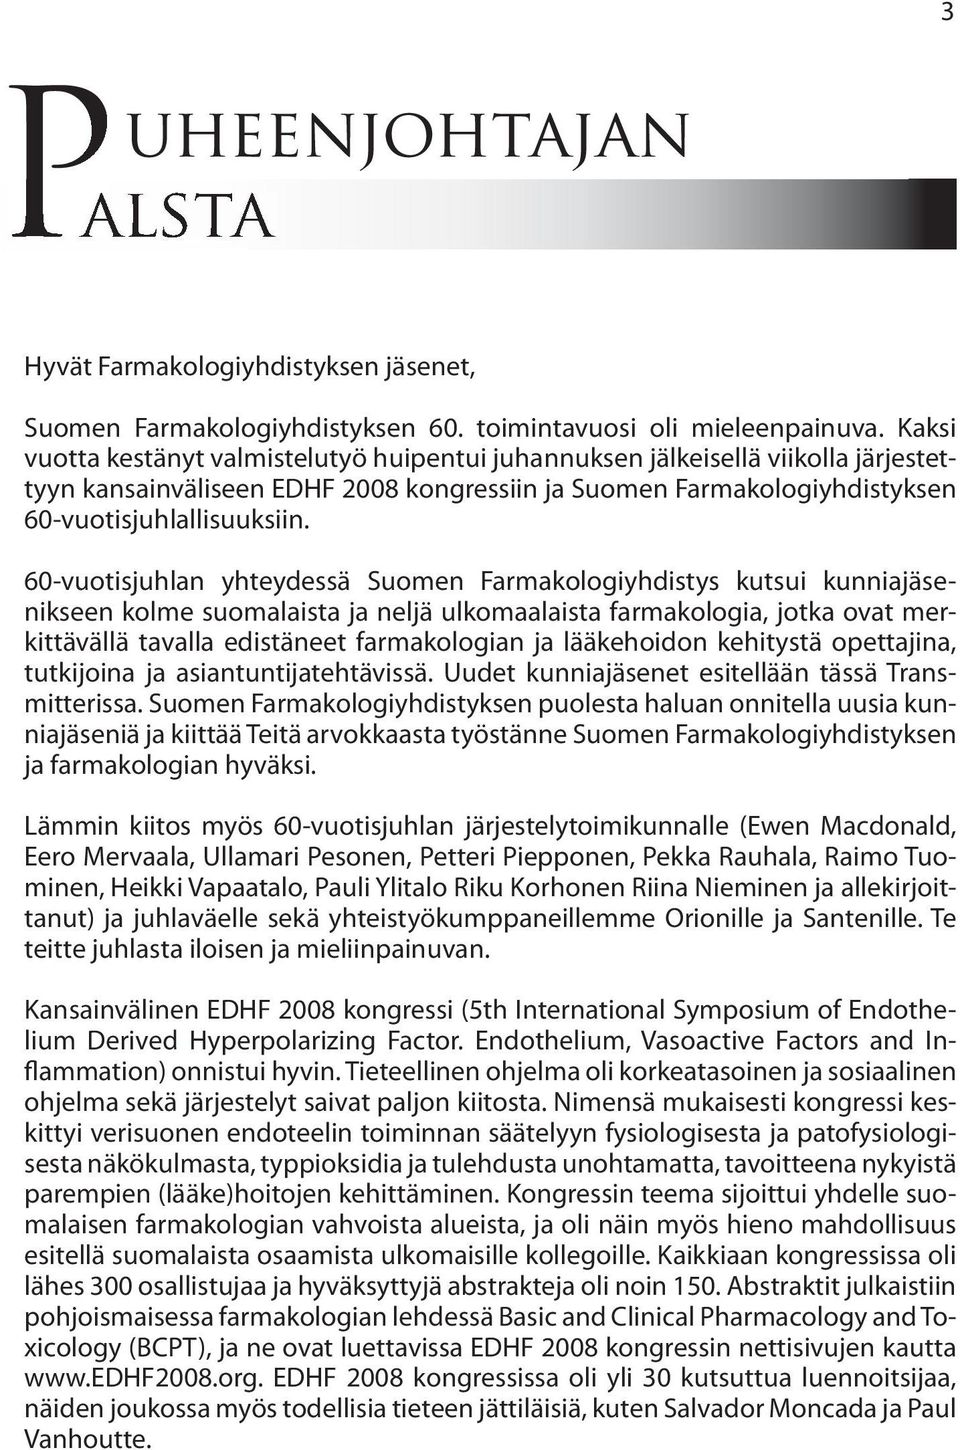 60-vuotisjuhlan yhteydessä Suomen Farmakologiyhdistys kutsui kunniajäsenikseen kolme suomalaista ja neljä ulkomaalaista farmakologia, jotka ovat merkittävällä tavalla edistäneet farmakologian ja